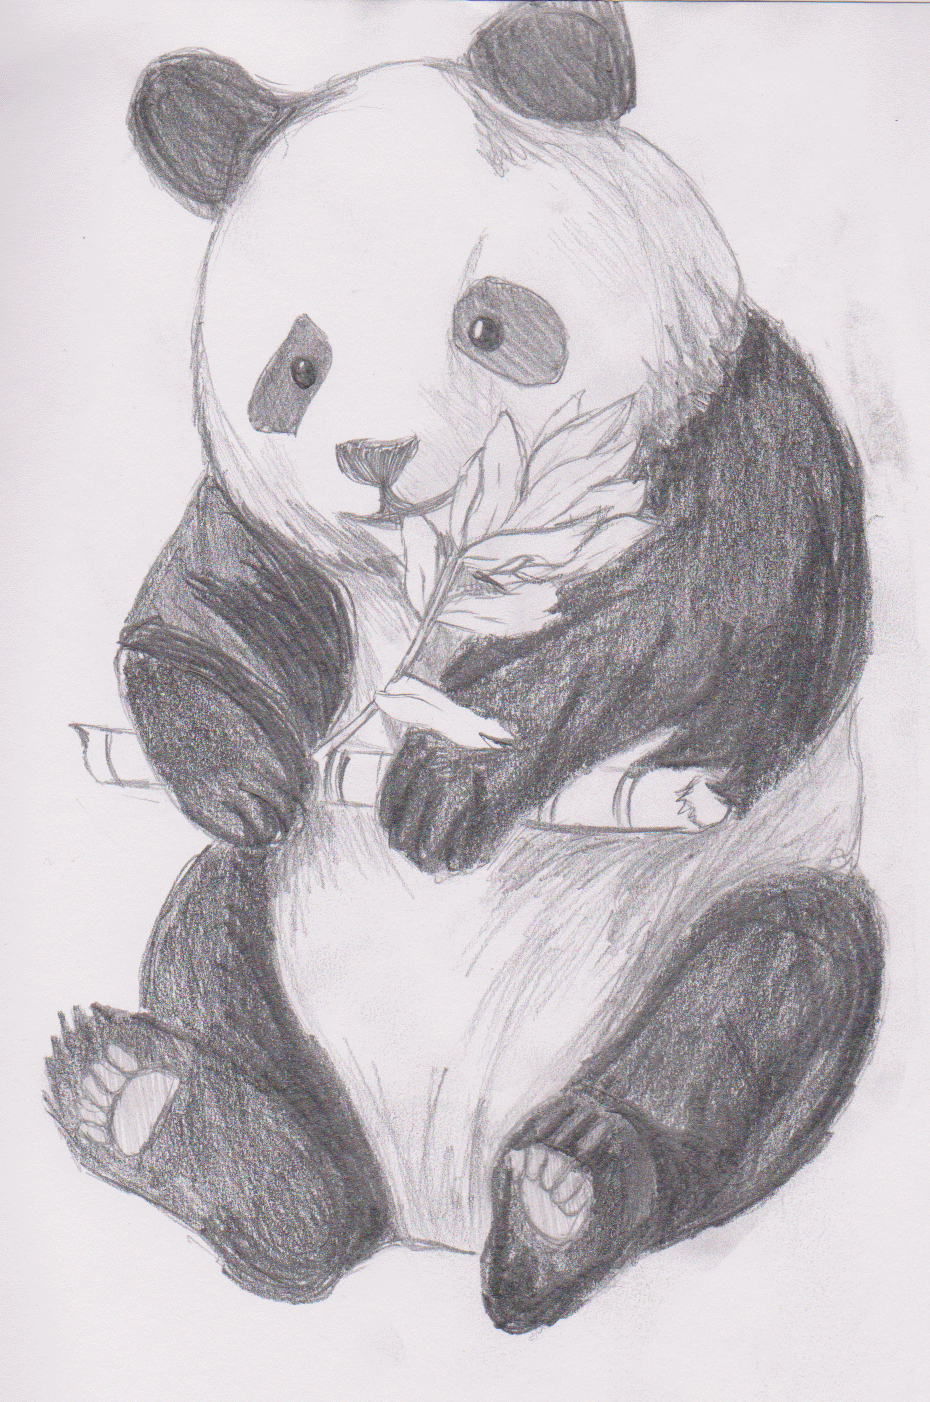 Панда рисунок для срисовки